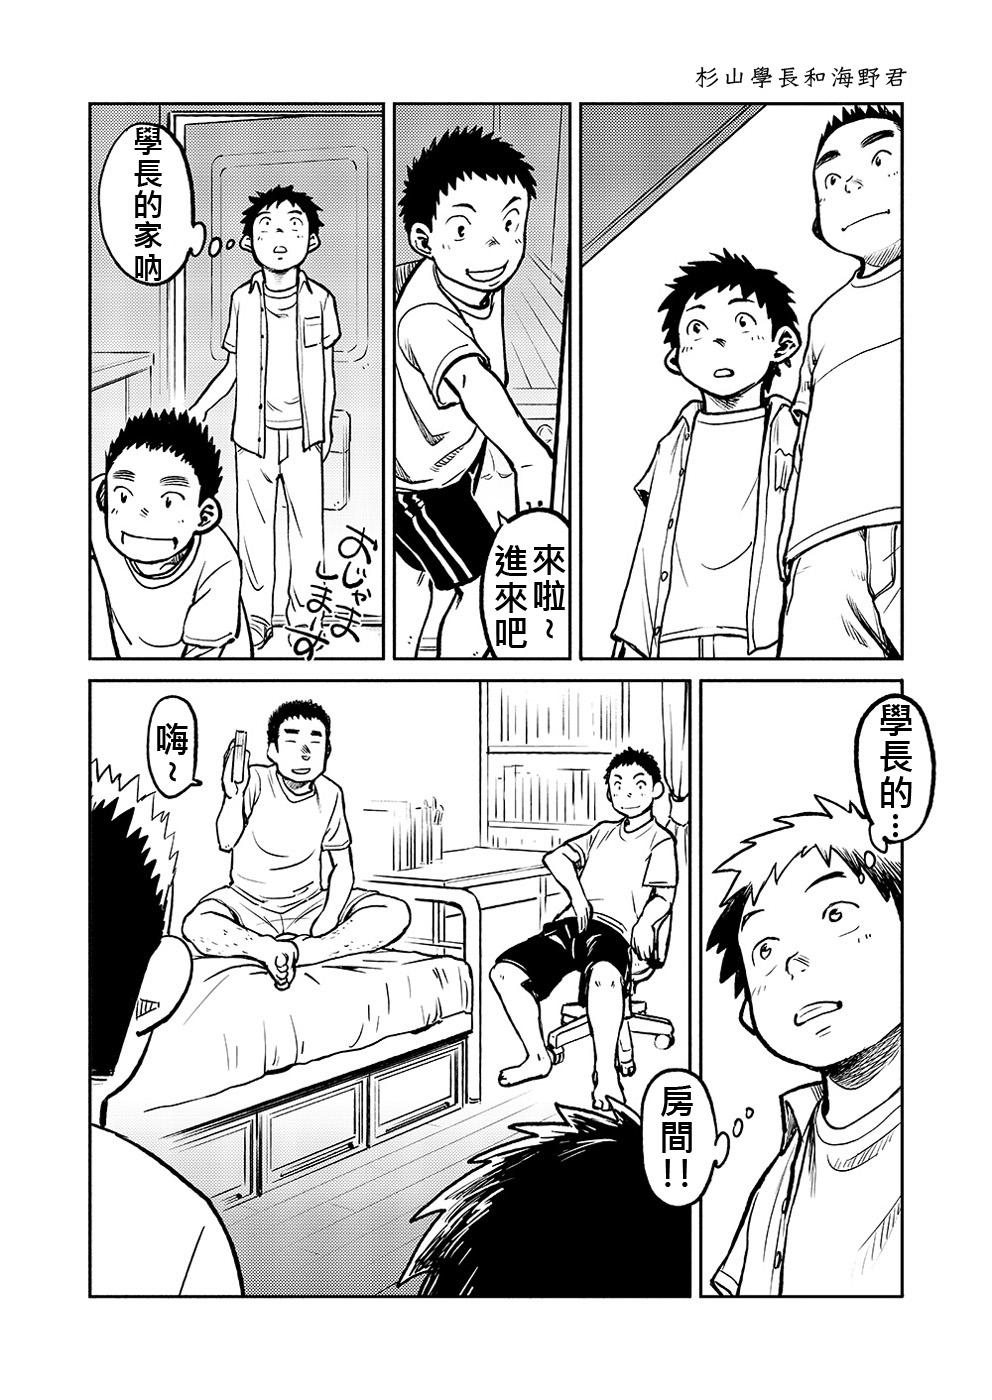 Matures Manga Shounen Zoom Vol. 04 | 漫畫少年特寫 Vol. 04 Hot Brunette - Page 11